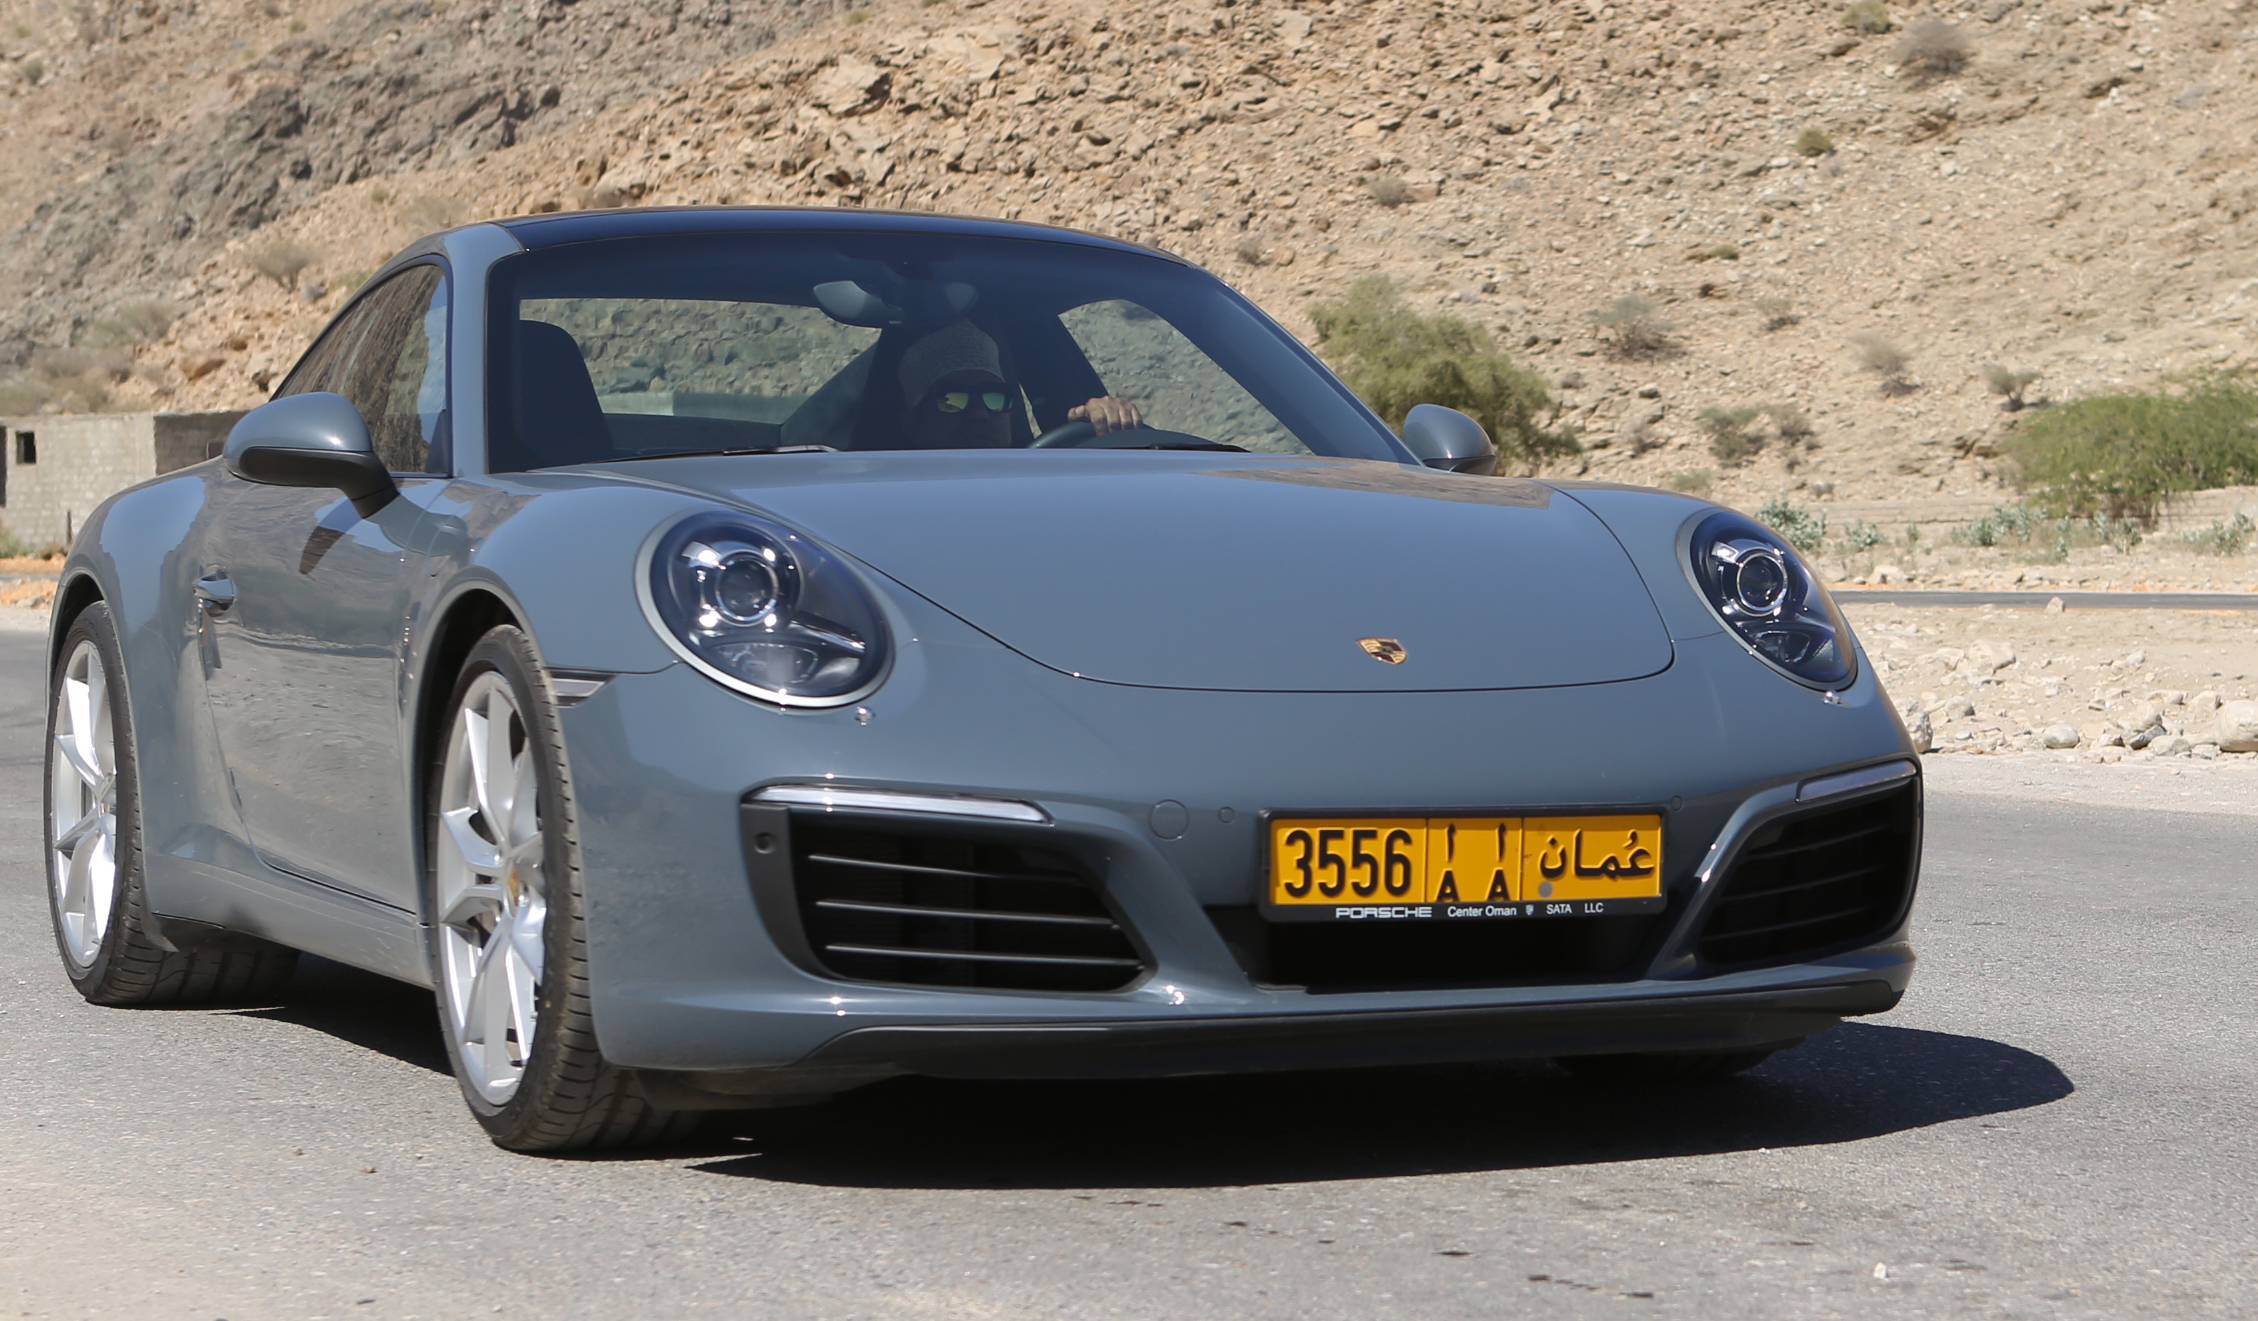 Oman Motoring: A day with seven Porsches